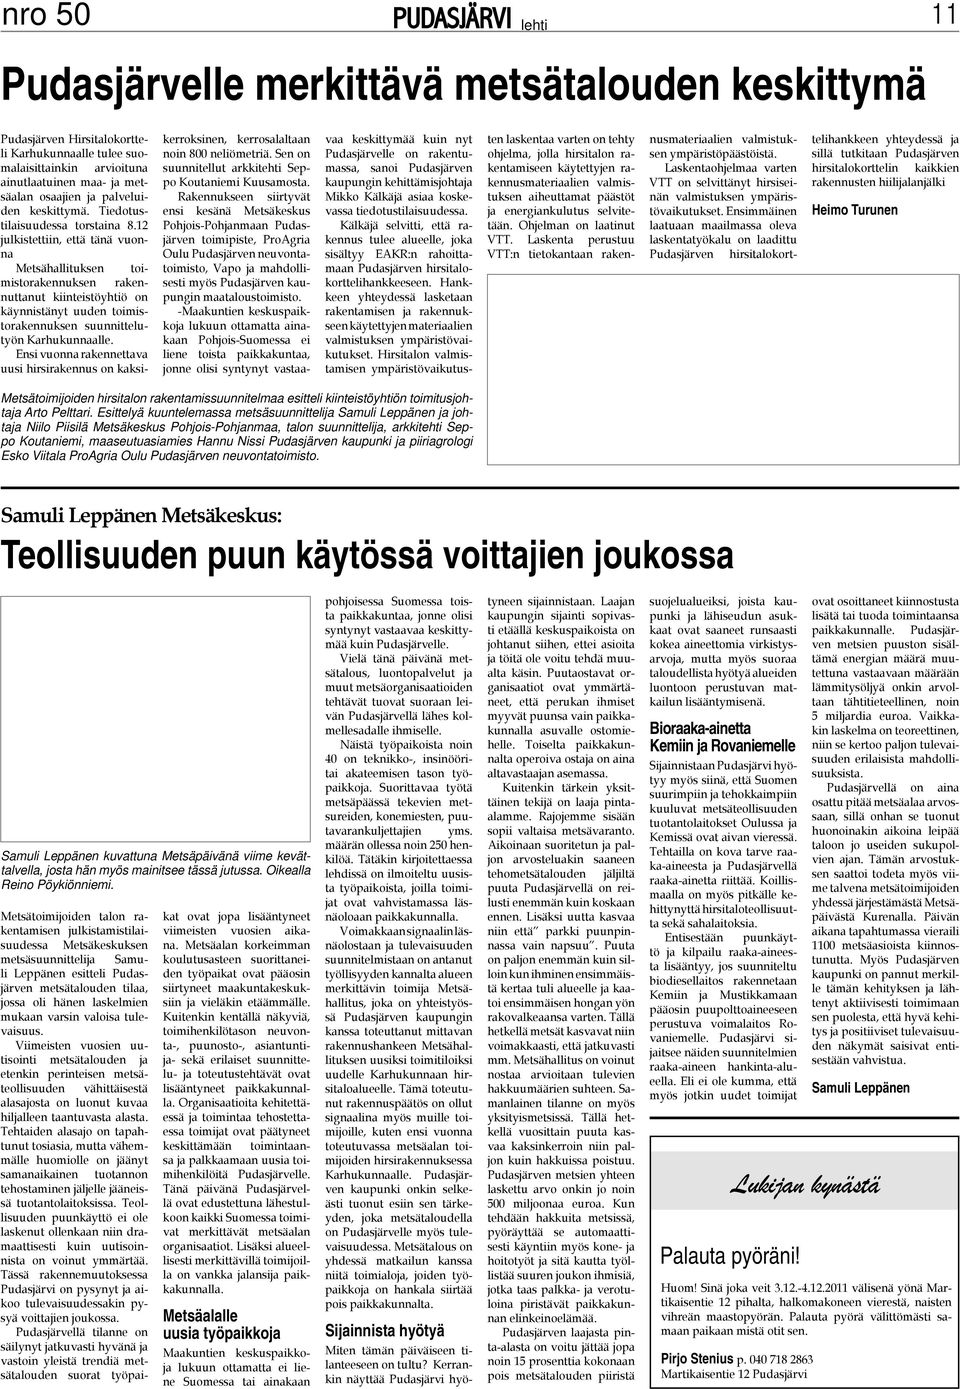 12 julkistettiin, että tänä vuonna Metsähallituksen toimistorakennuksen rakennuttanut kiinteistöyhtiö on käynnistänyt uuden toimistorakennuksen suunnittelutyön Karhukunnaalle.